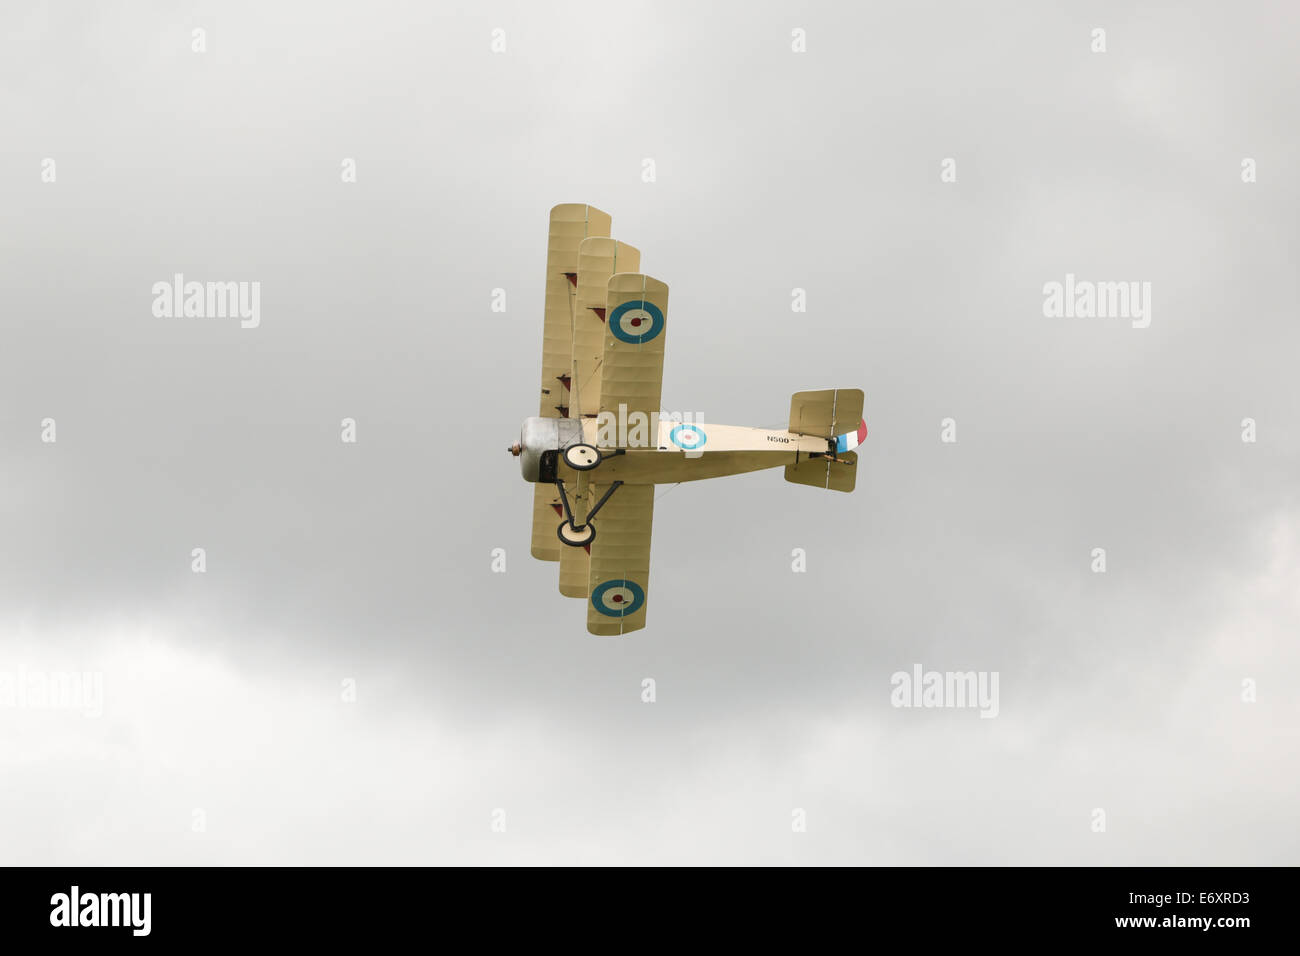 C'est la Grande Guerre Display Team - Sopwith Triplane affiché à Shoreham Airshow, 2014, l'aéroport de Shoreham, East Sussex, UK. Banque D'Images